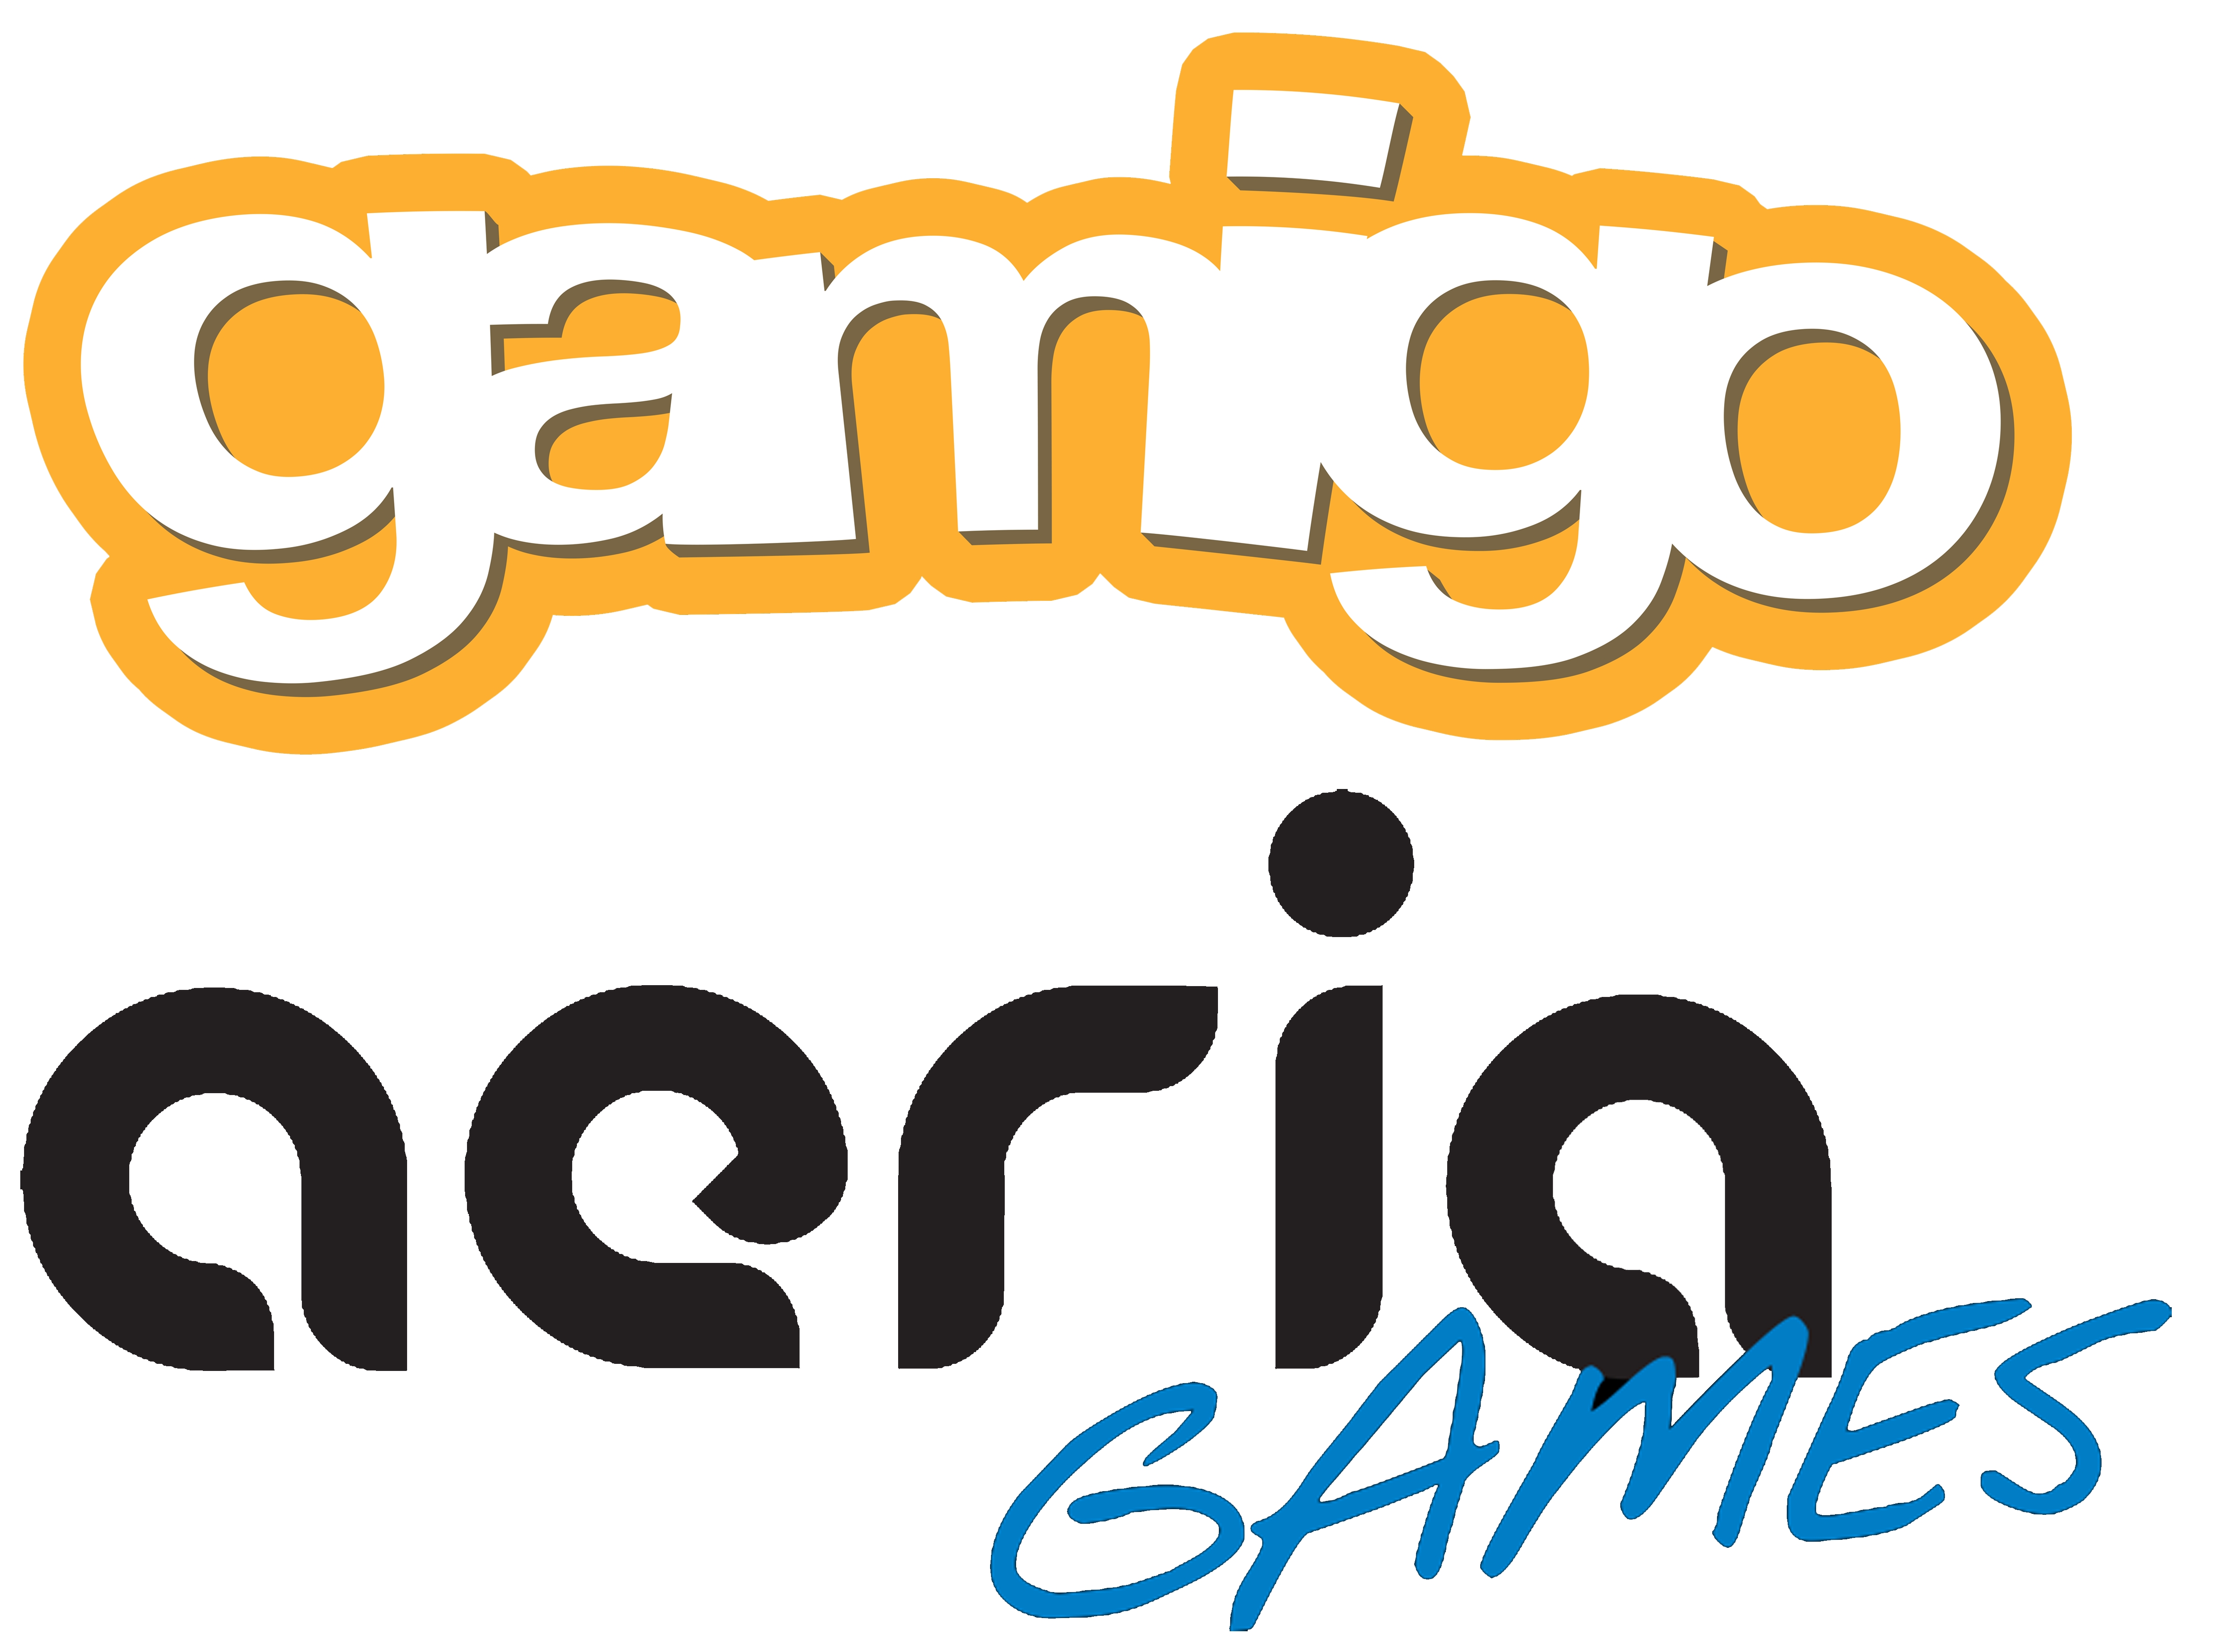 Gamigo und Aeria Games bringen es auf 70 Mio. Euro Umsatz und 400 Mitarbeiter - vor der Fusion.